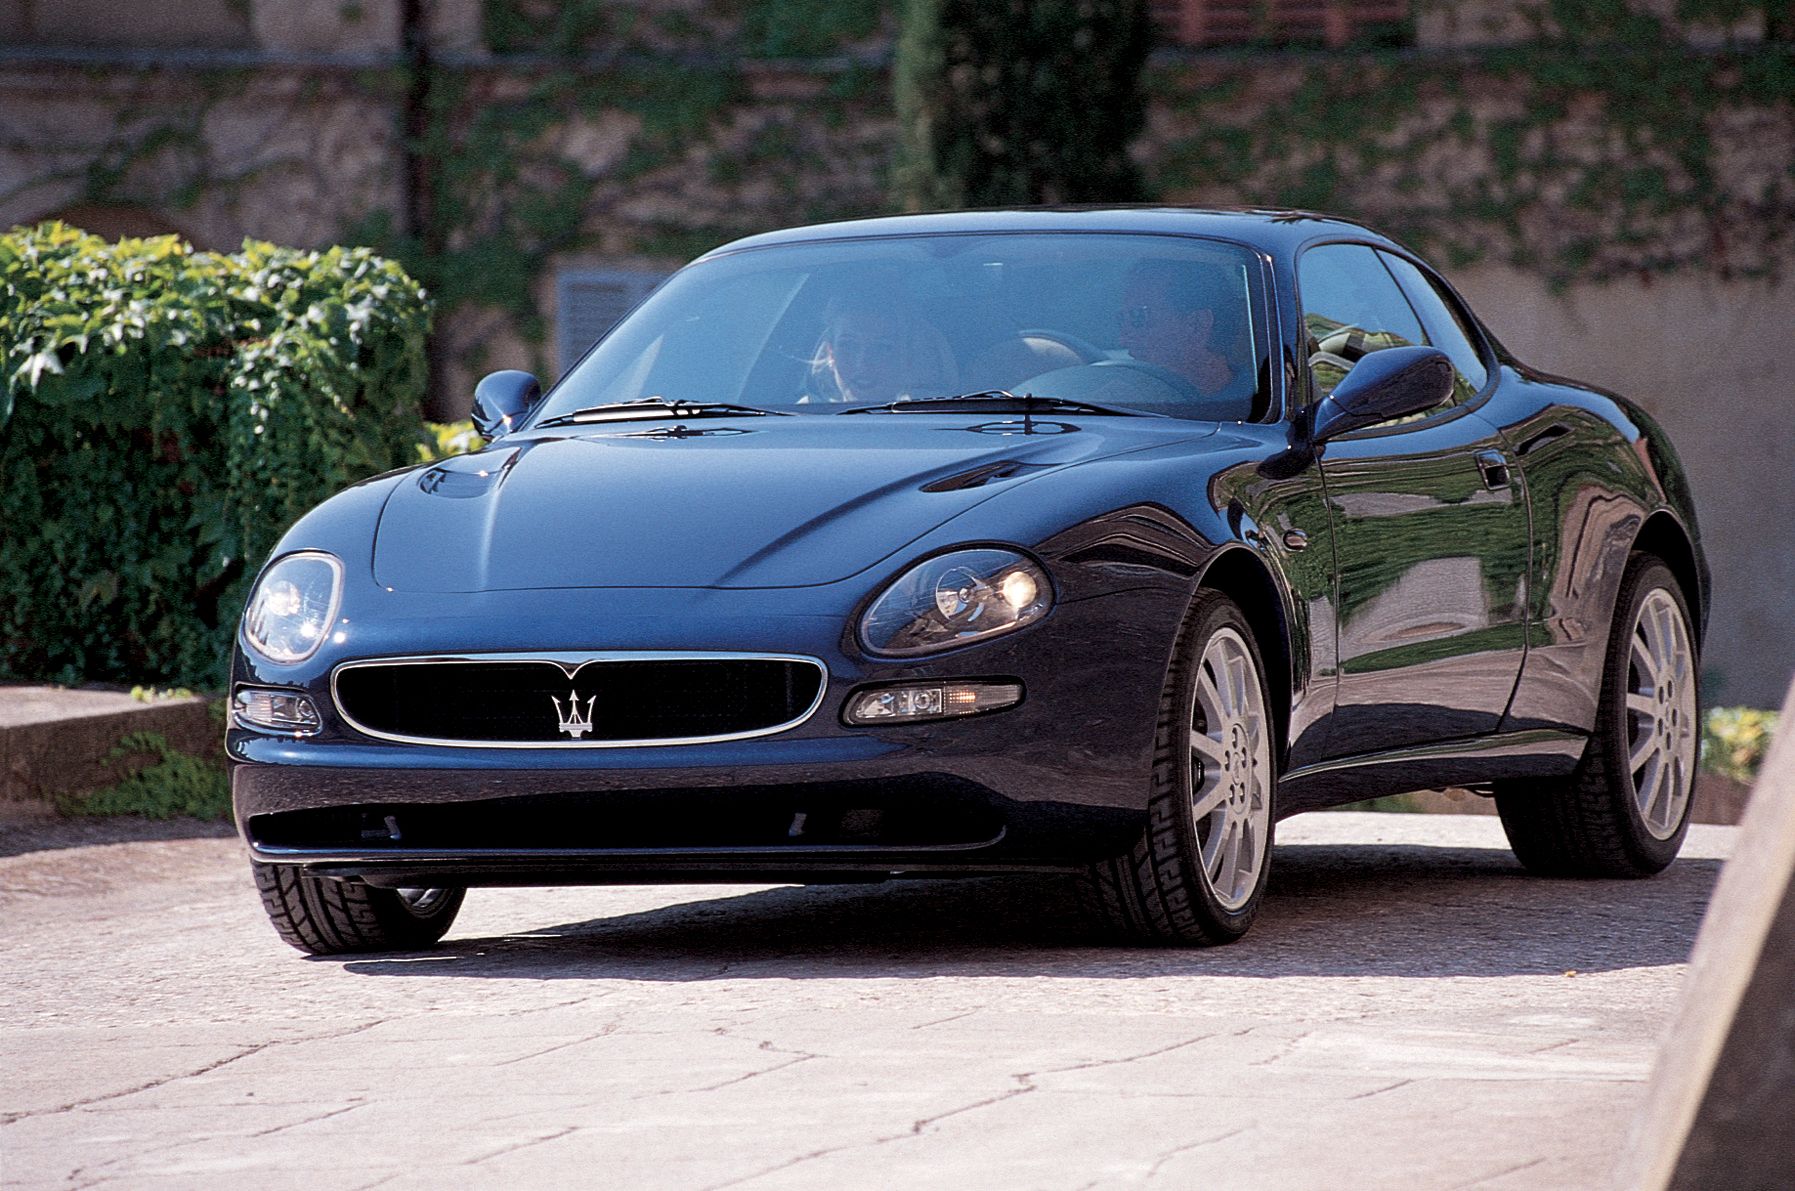 Мазерати производитель. Maserati 3200 gt 1998. Maserati gt3200 2002. Maserati 3200 gt, 2000. Maserati 3200 gt, 2001.